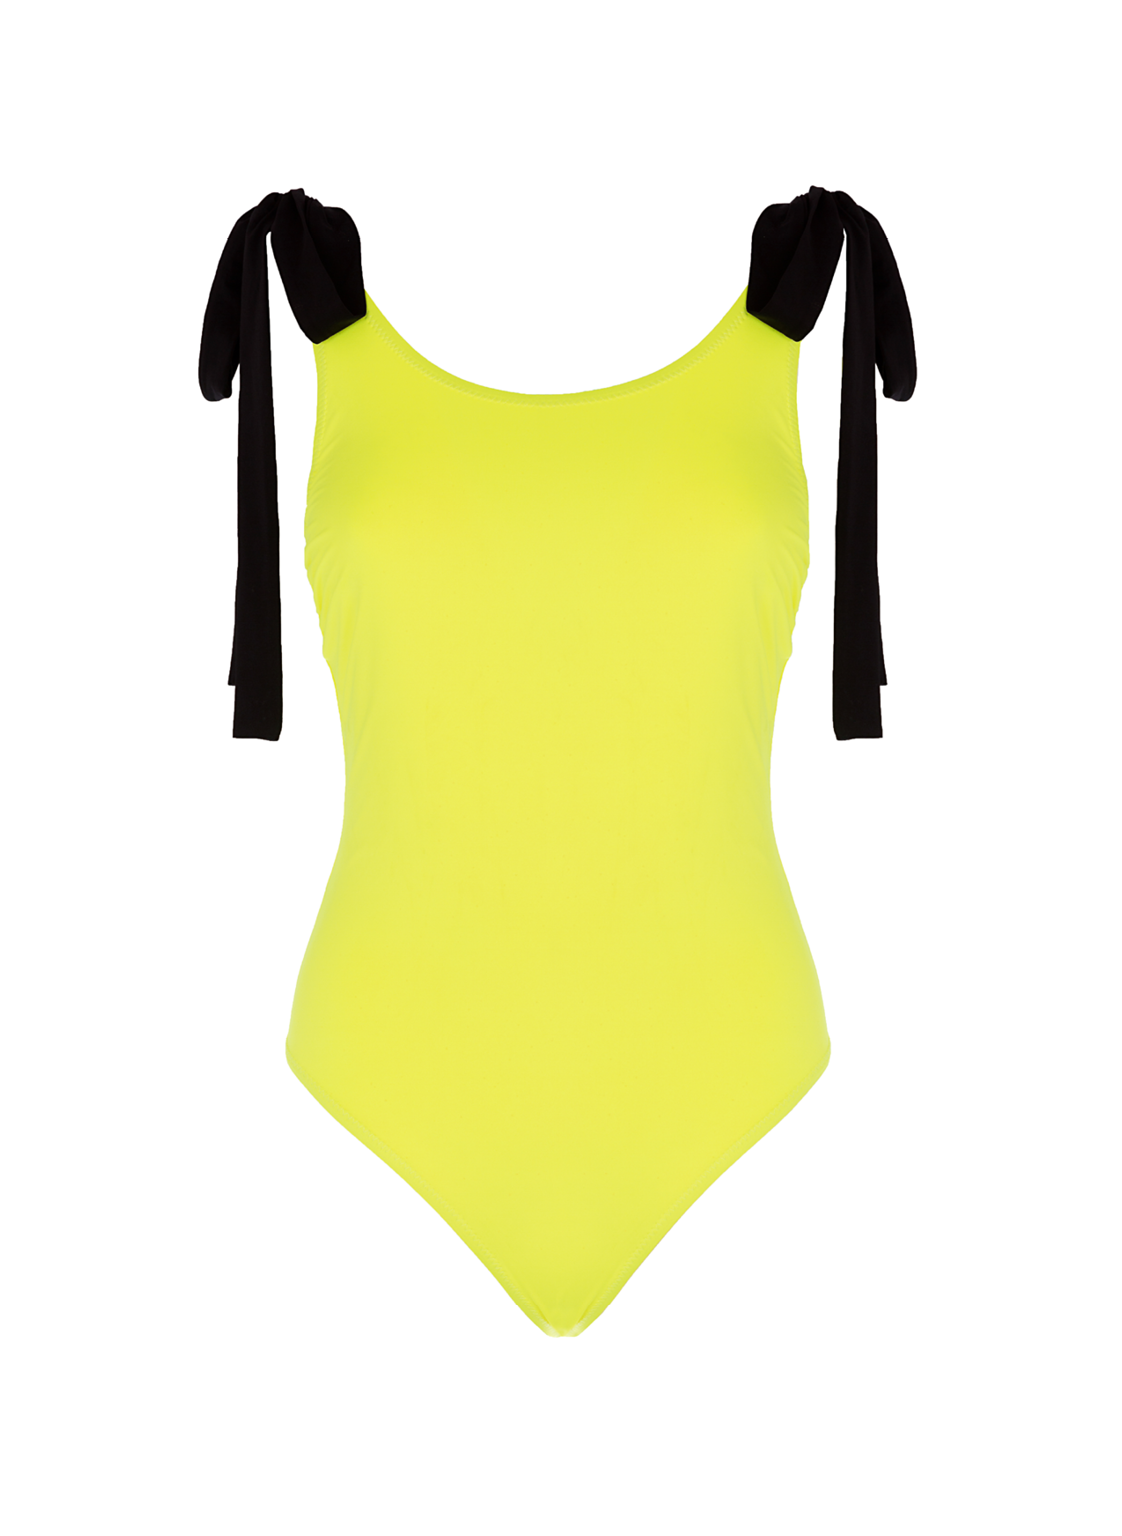 Neongelber Badeanzug mit langen Bändern an den Schultern und tiefem Rückenausschnitt aus recyceltem Lycra